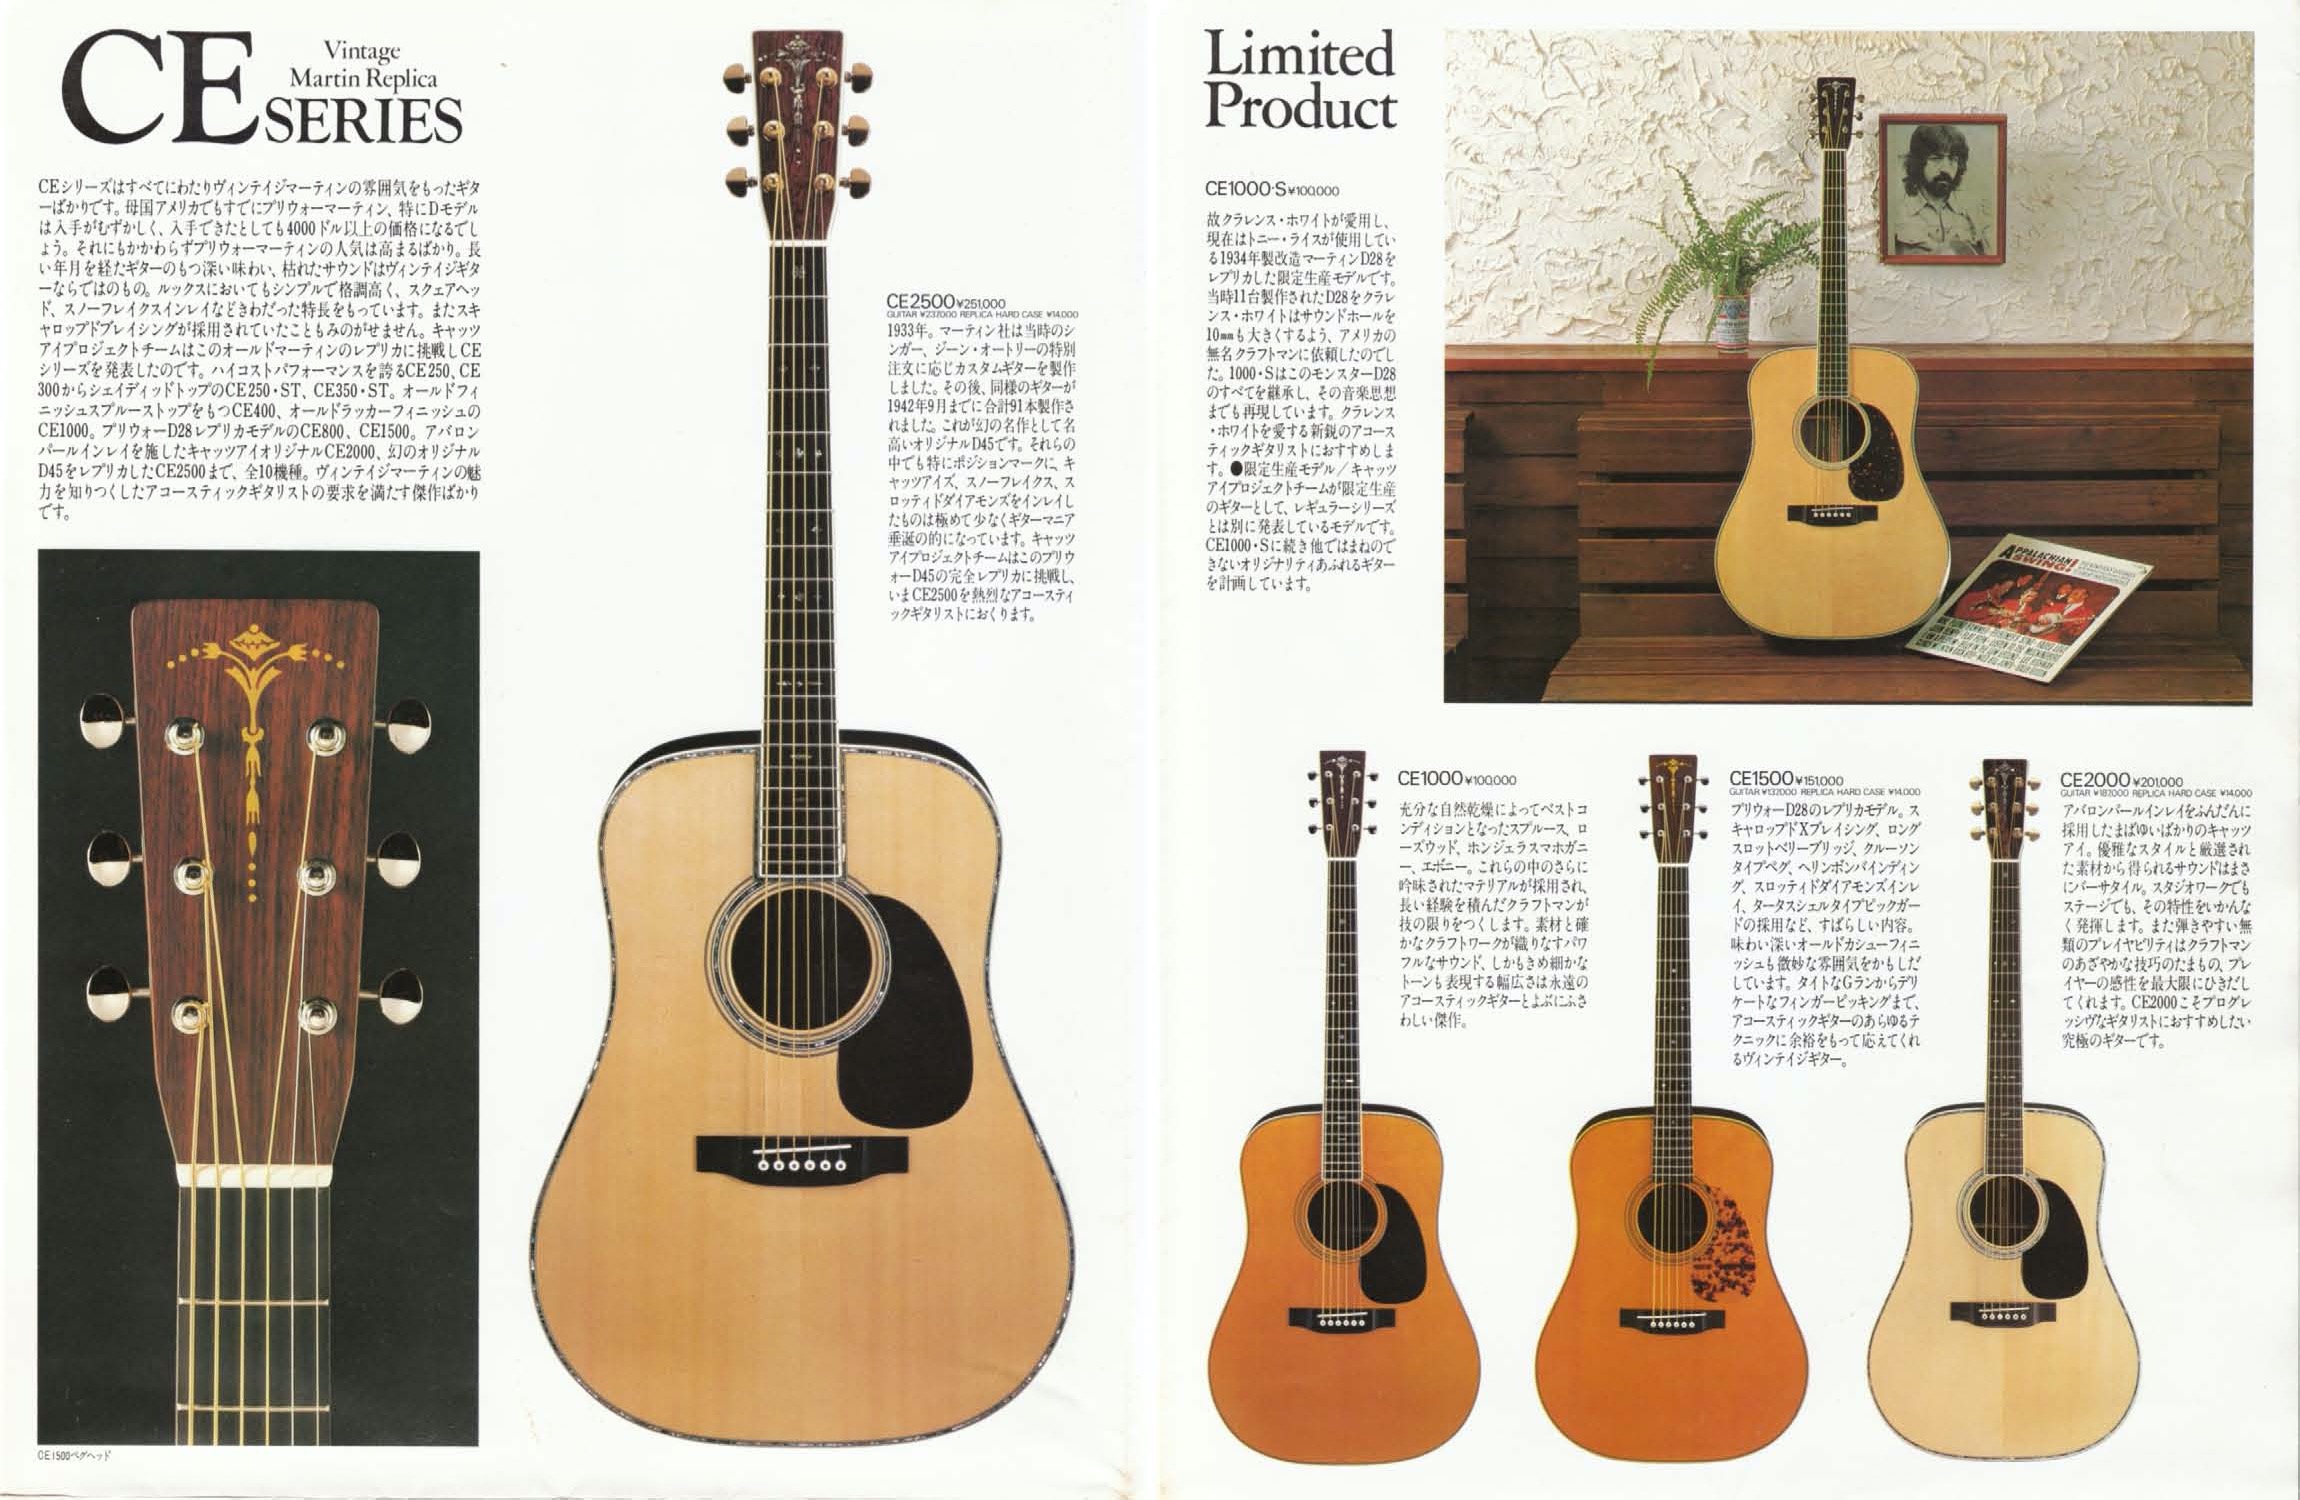 1981年 TOKAIアコースティックギター（Cat's Eyes & Martin）カタログ 